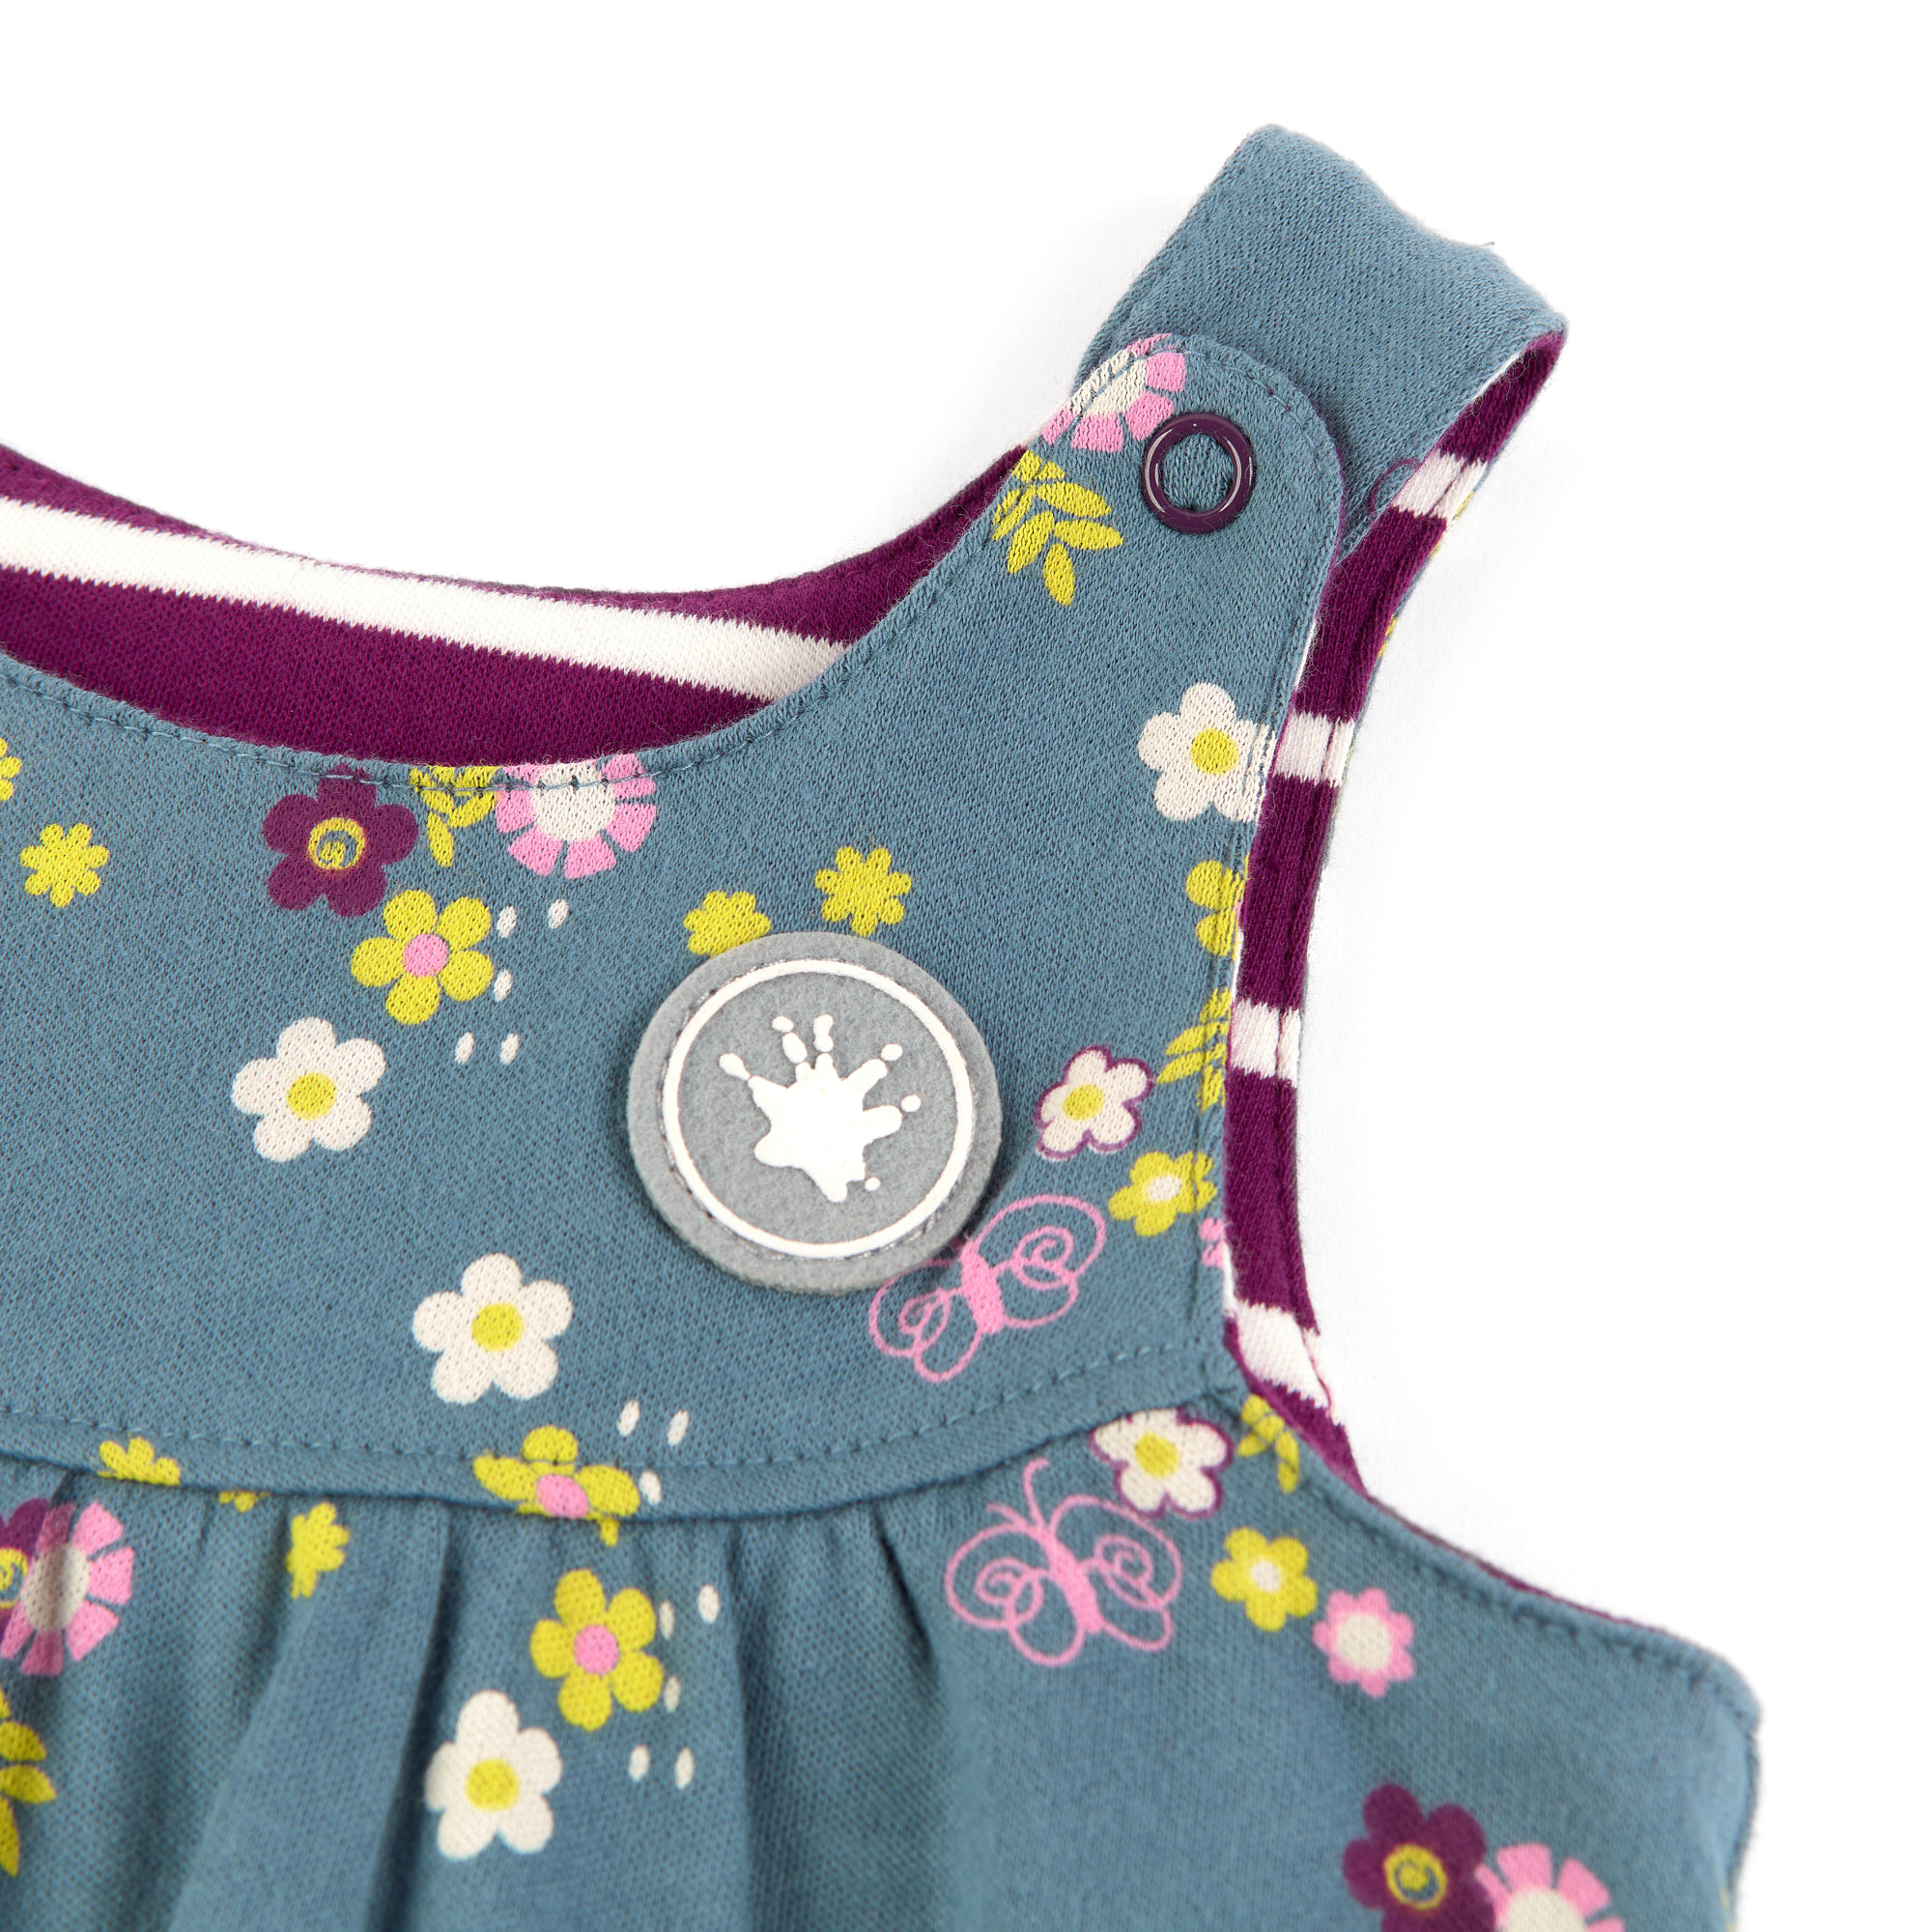 Wendbares Baby Trägerkleid gestreift oder mit Blümchen Print